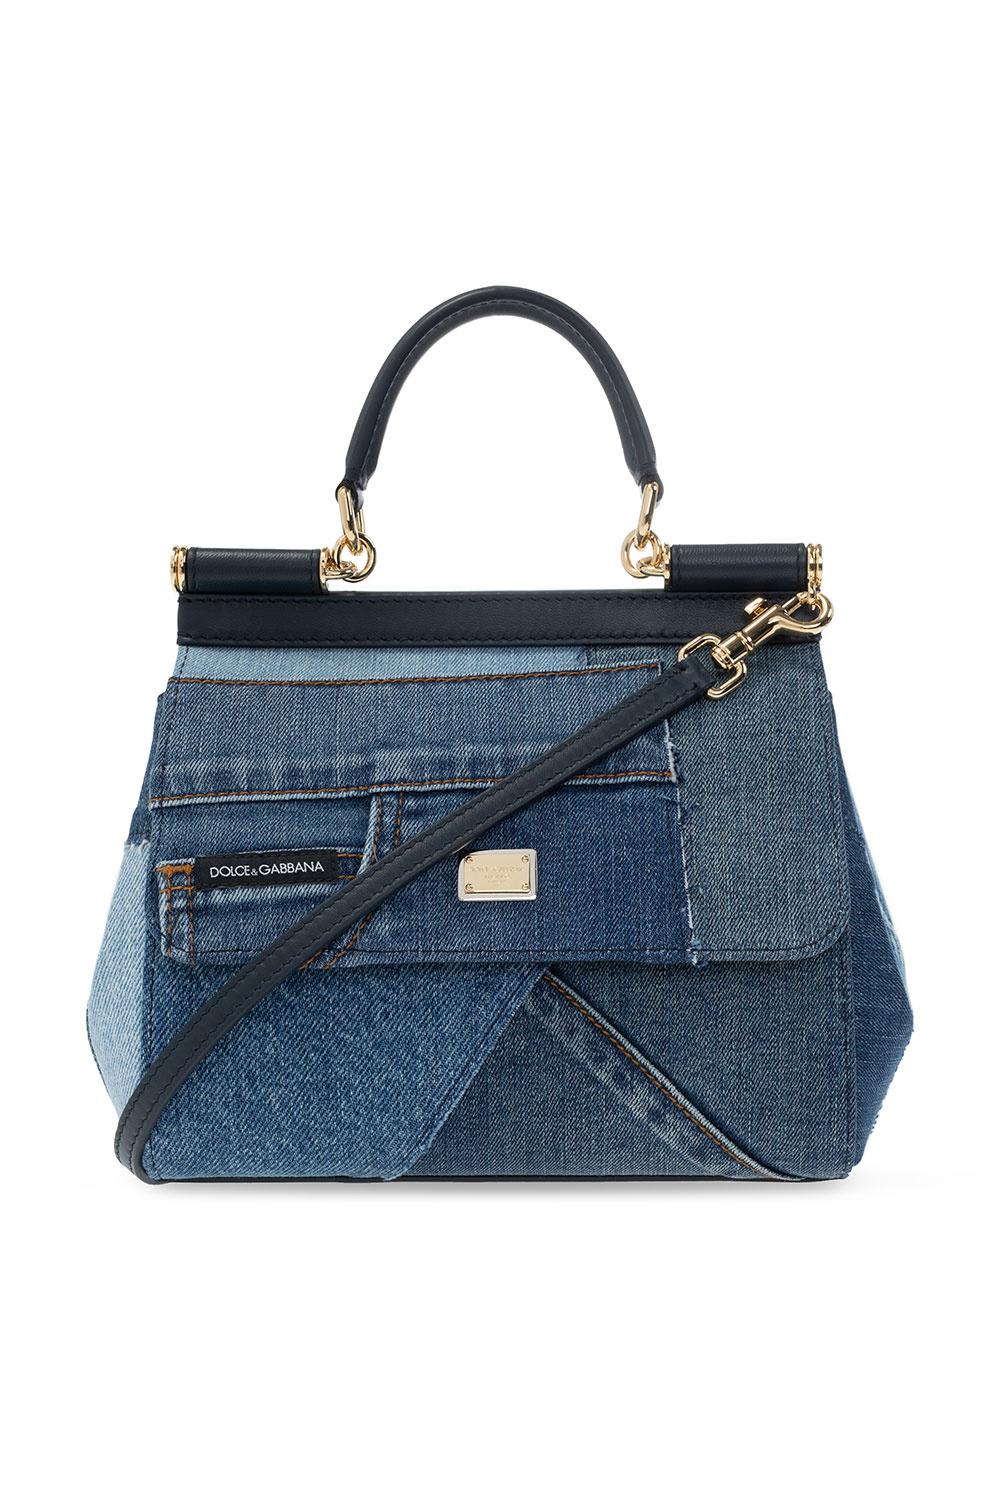 Dolce & Gabbana Sicily Denim Shoulder Bag | ModeSens